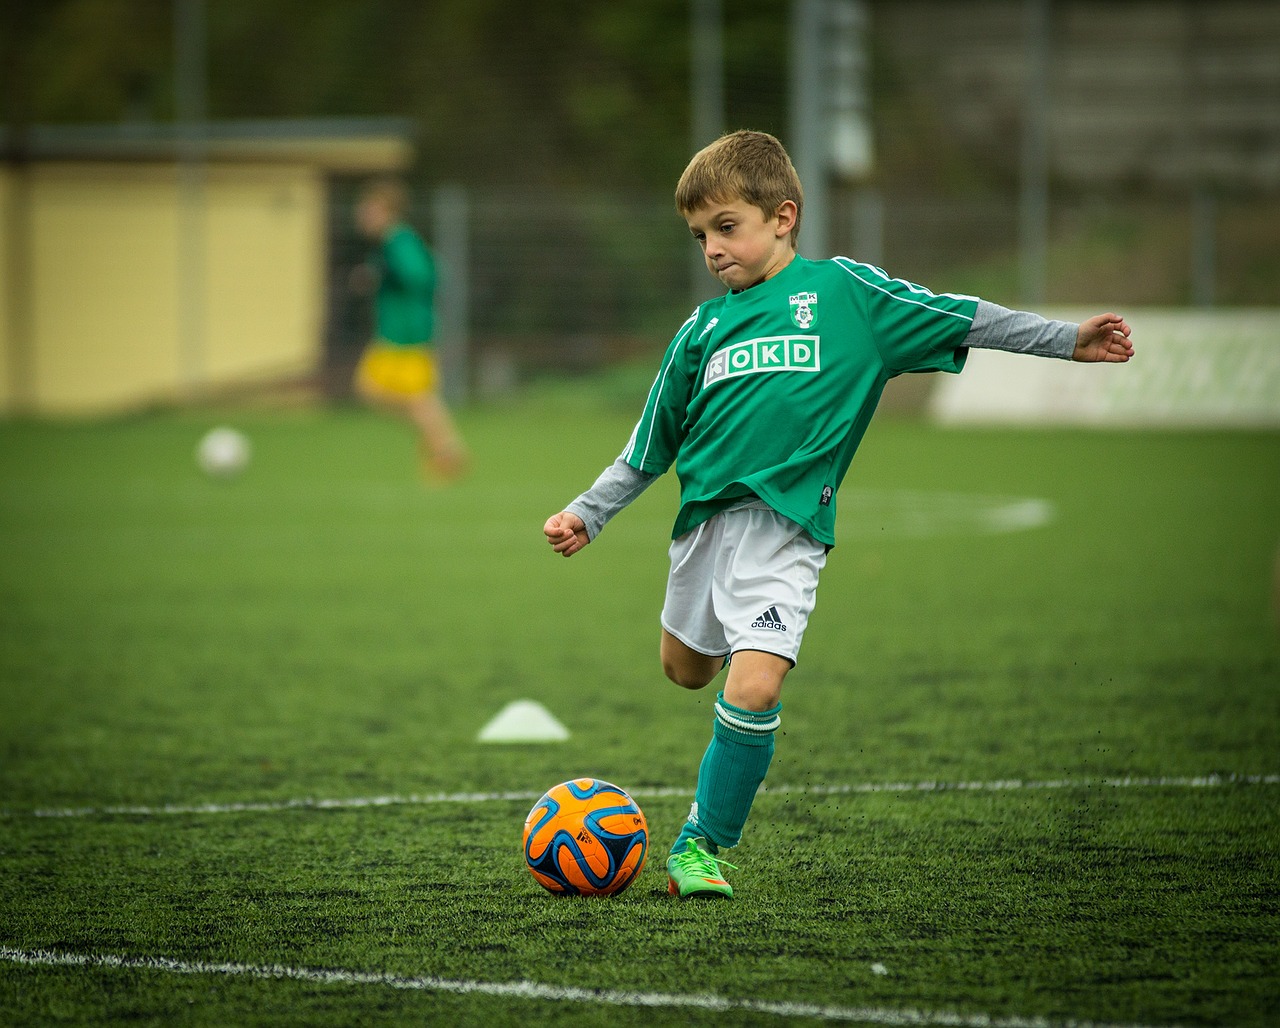 Slikom se prikazuje dječak koji igra nogomet.